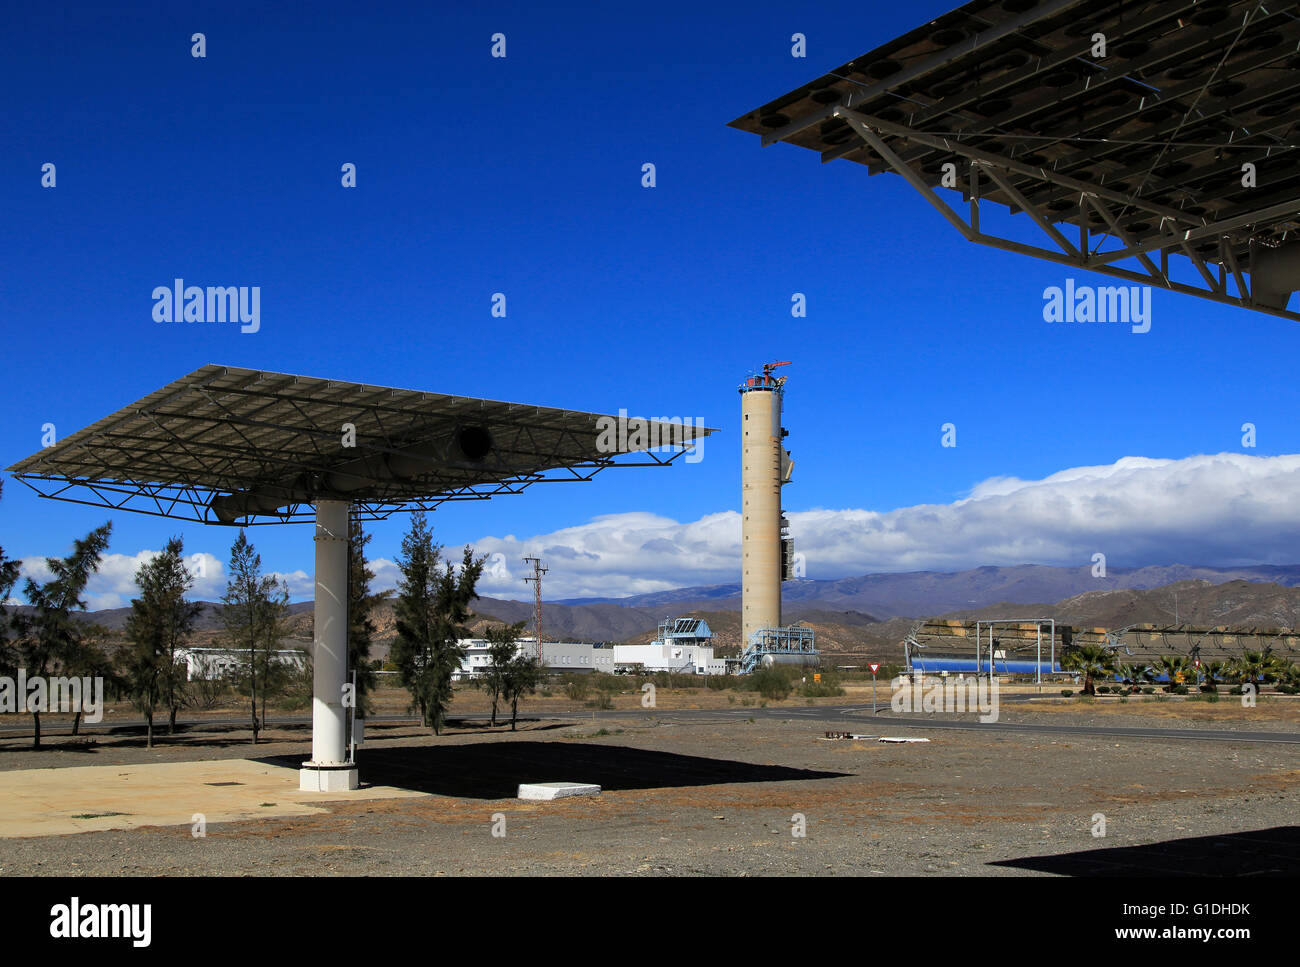 Los heliostatos y receptor central de torre CESA-1 en el centro de investigación científica de la energía solar, Tabernas, Almería, España Foto de stock